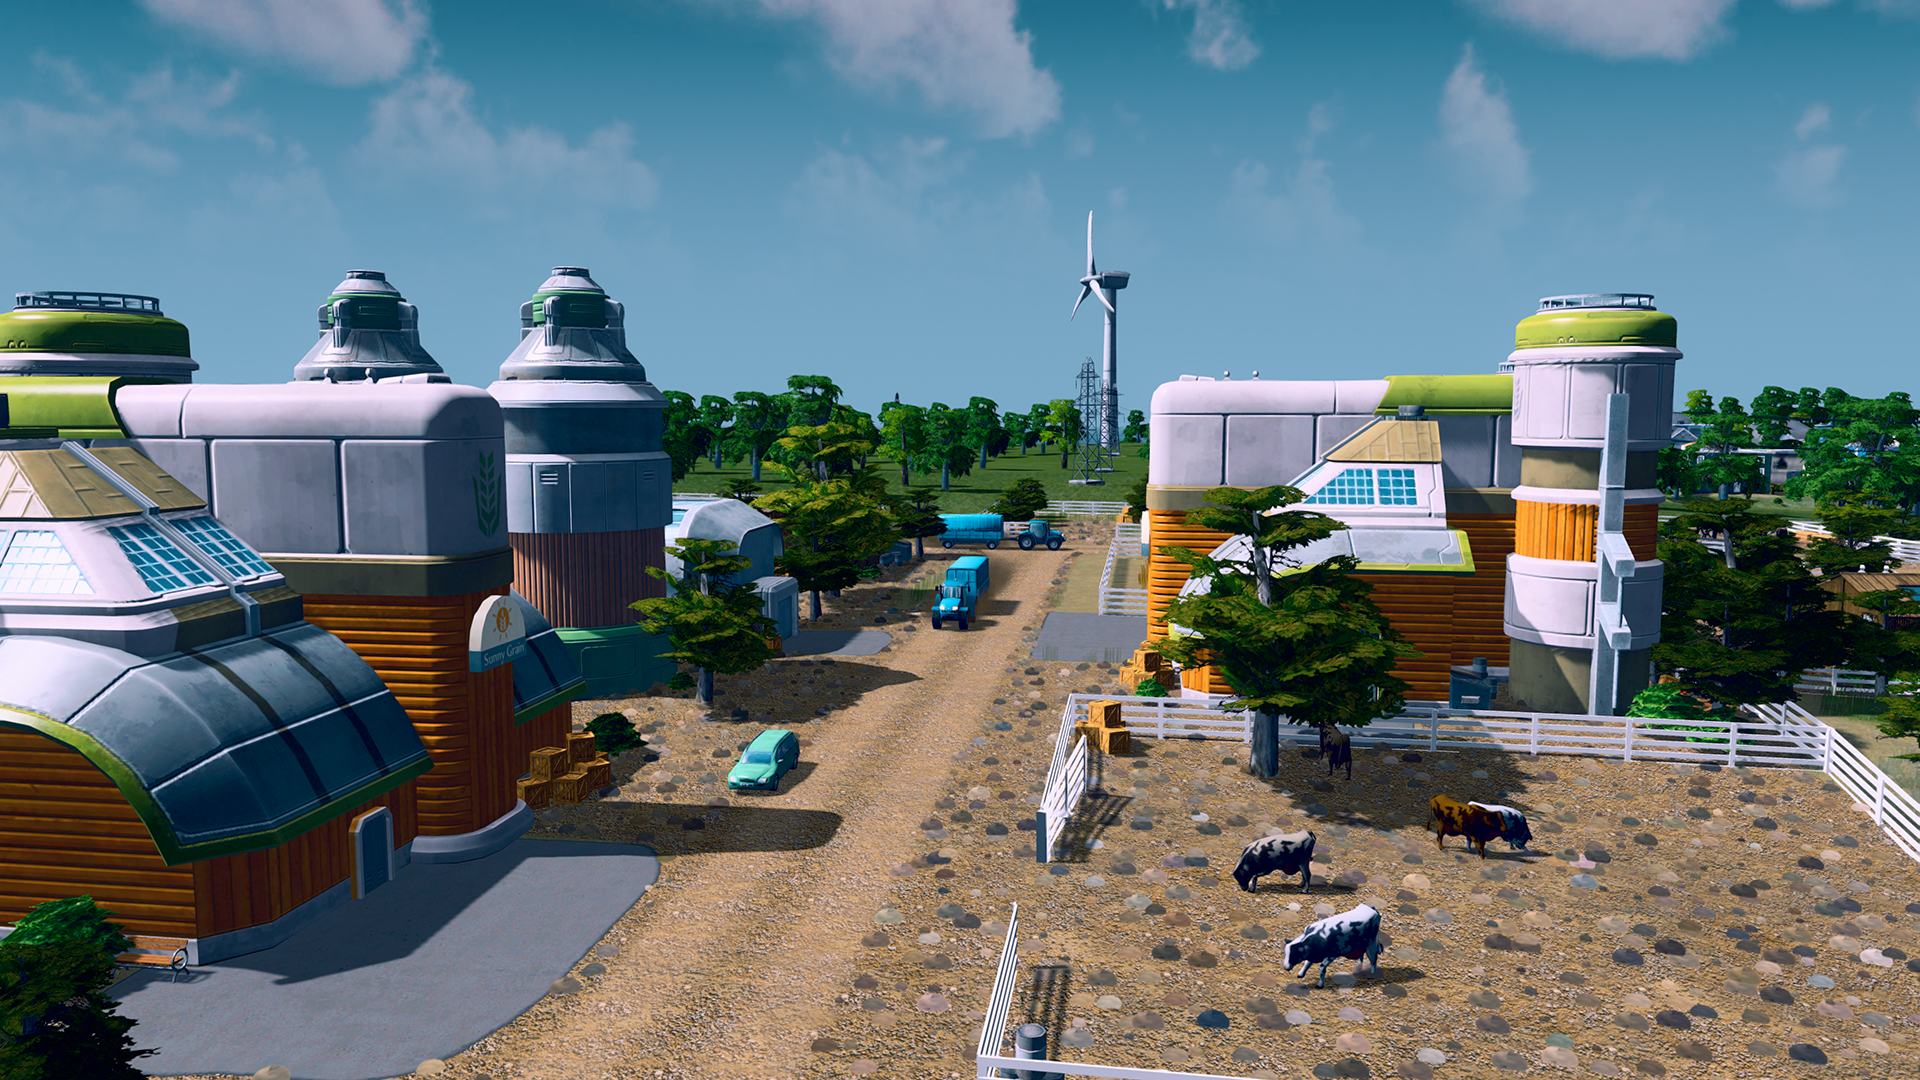 Farming Simulator e Cities Skylines são jogos grátis da PS Plus de